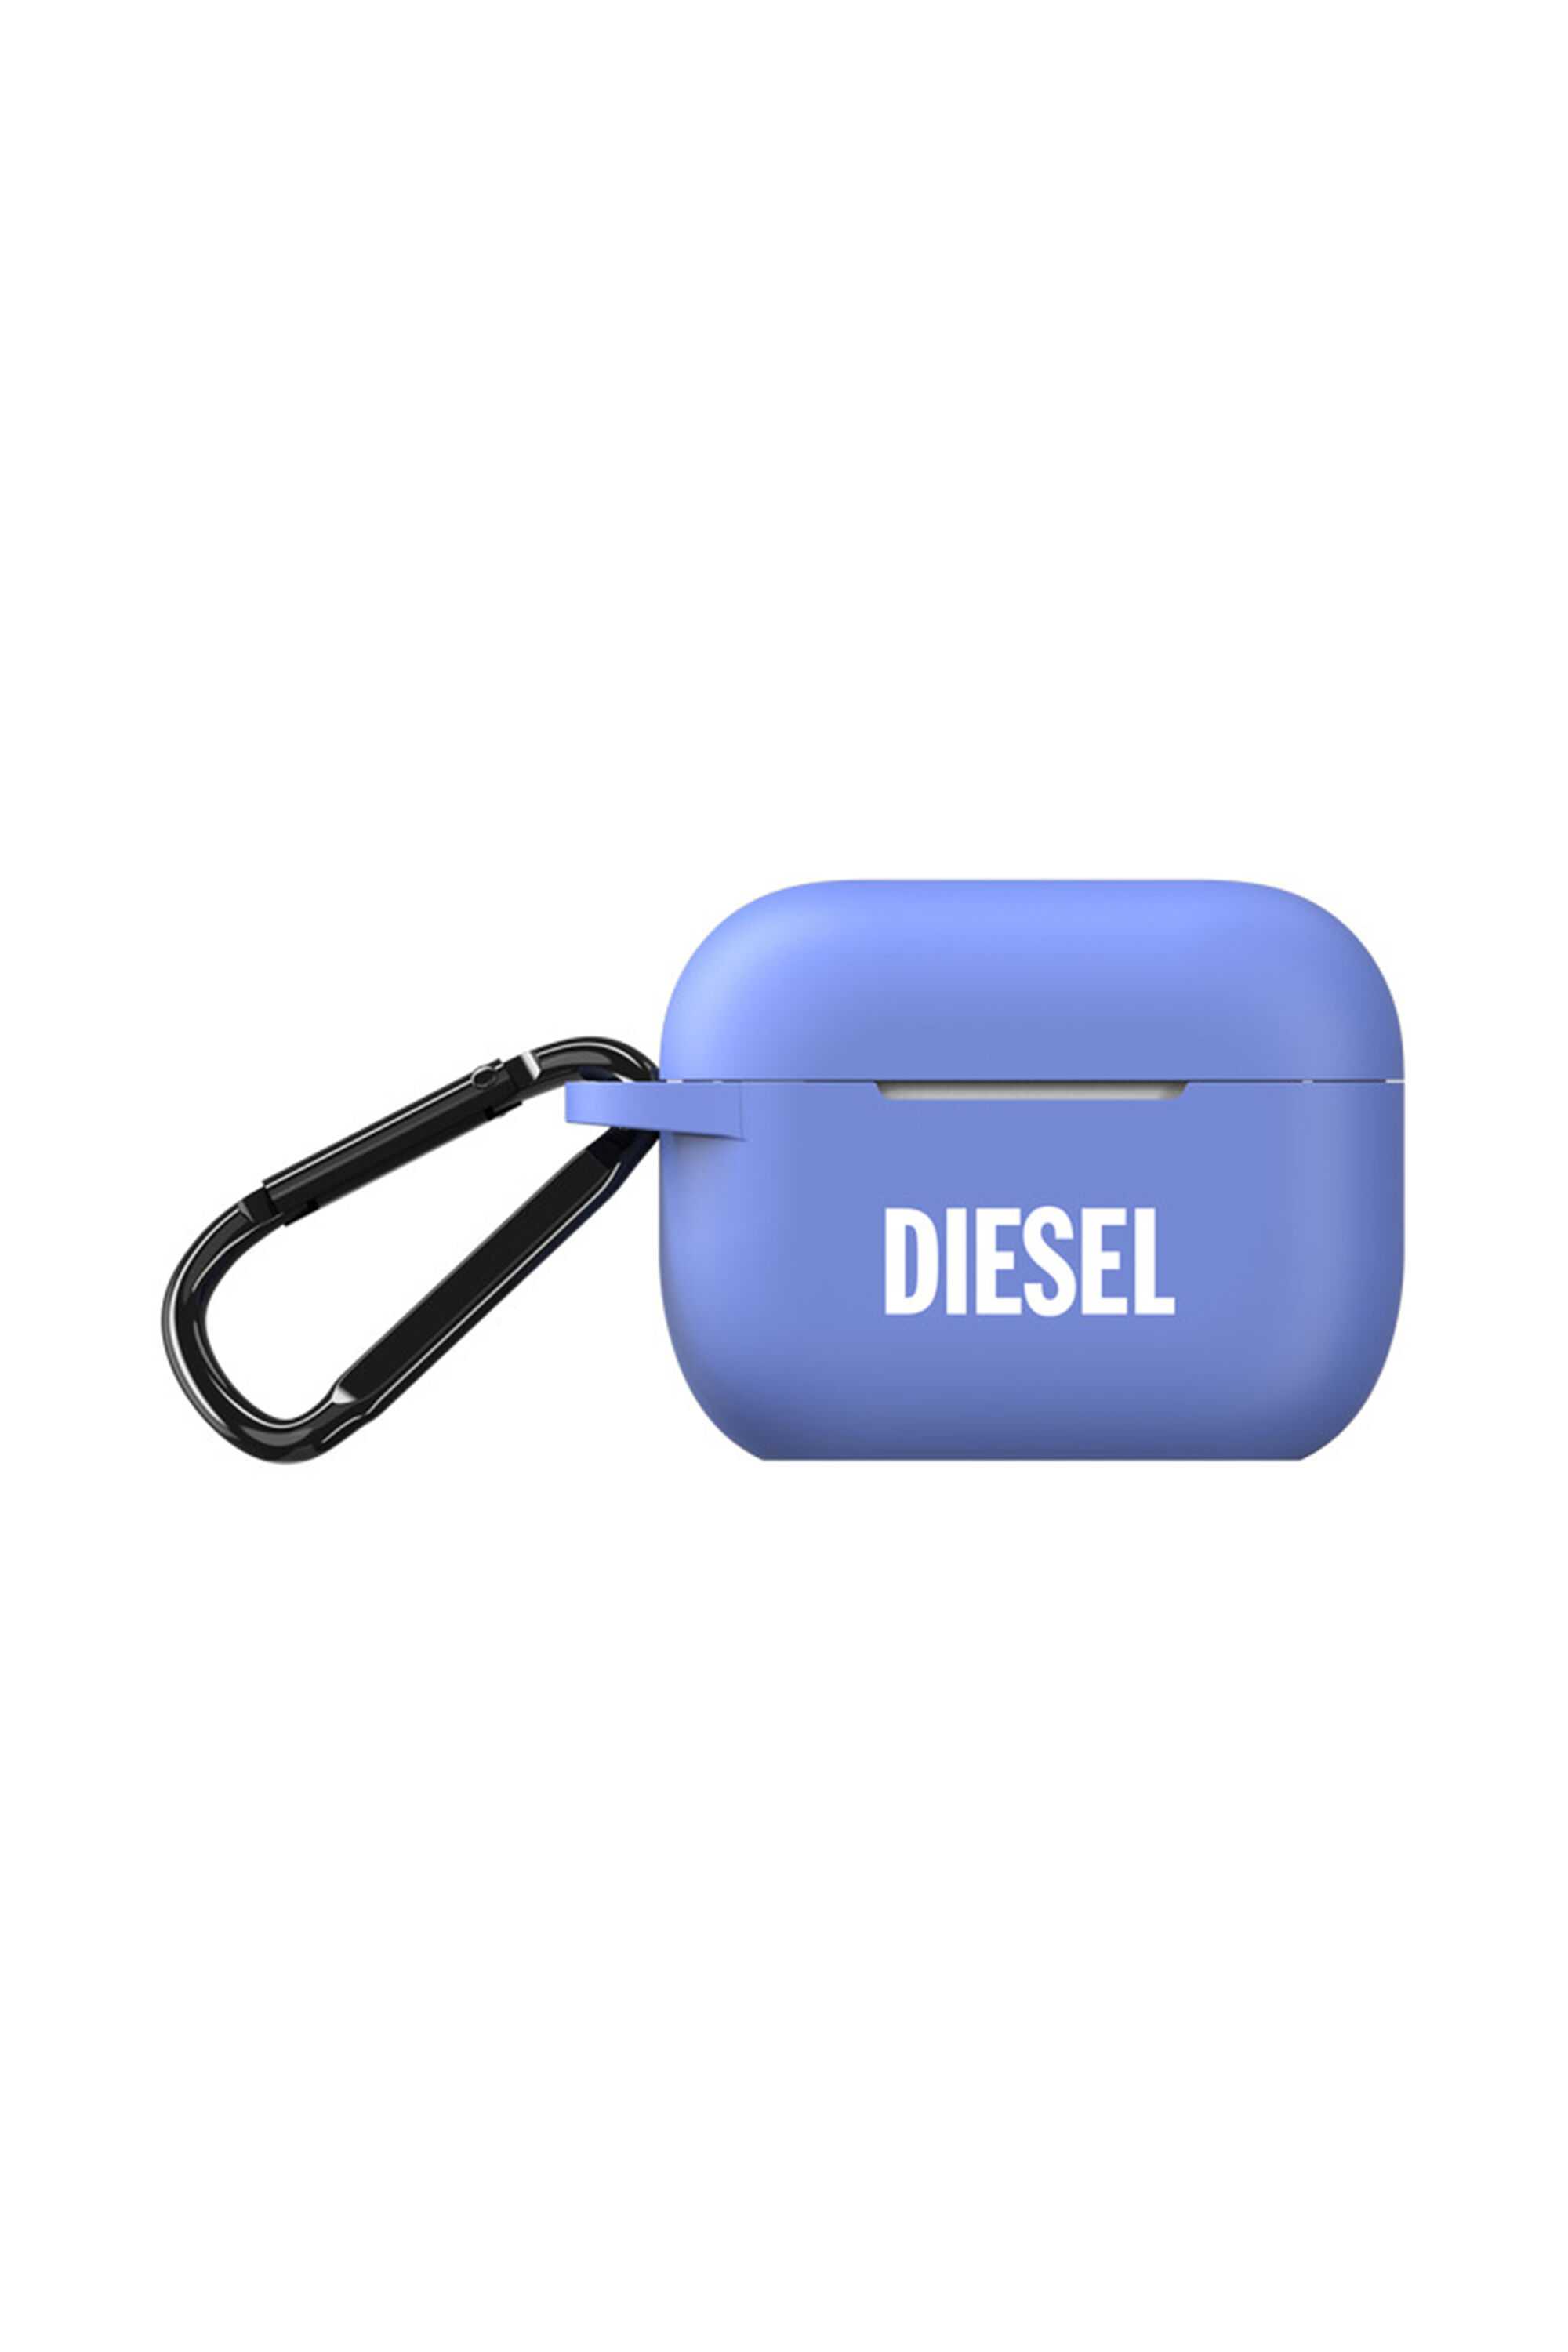 Diesel - 48321 AIRPOD CASE, Blau - Image 1